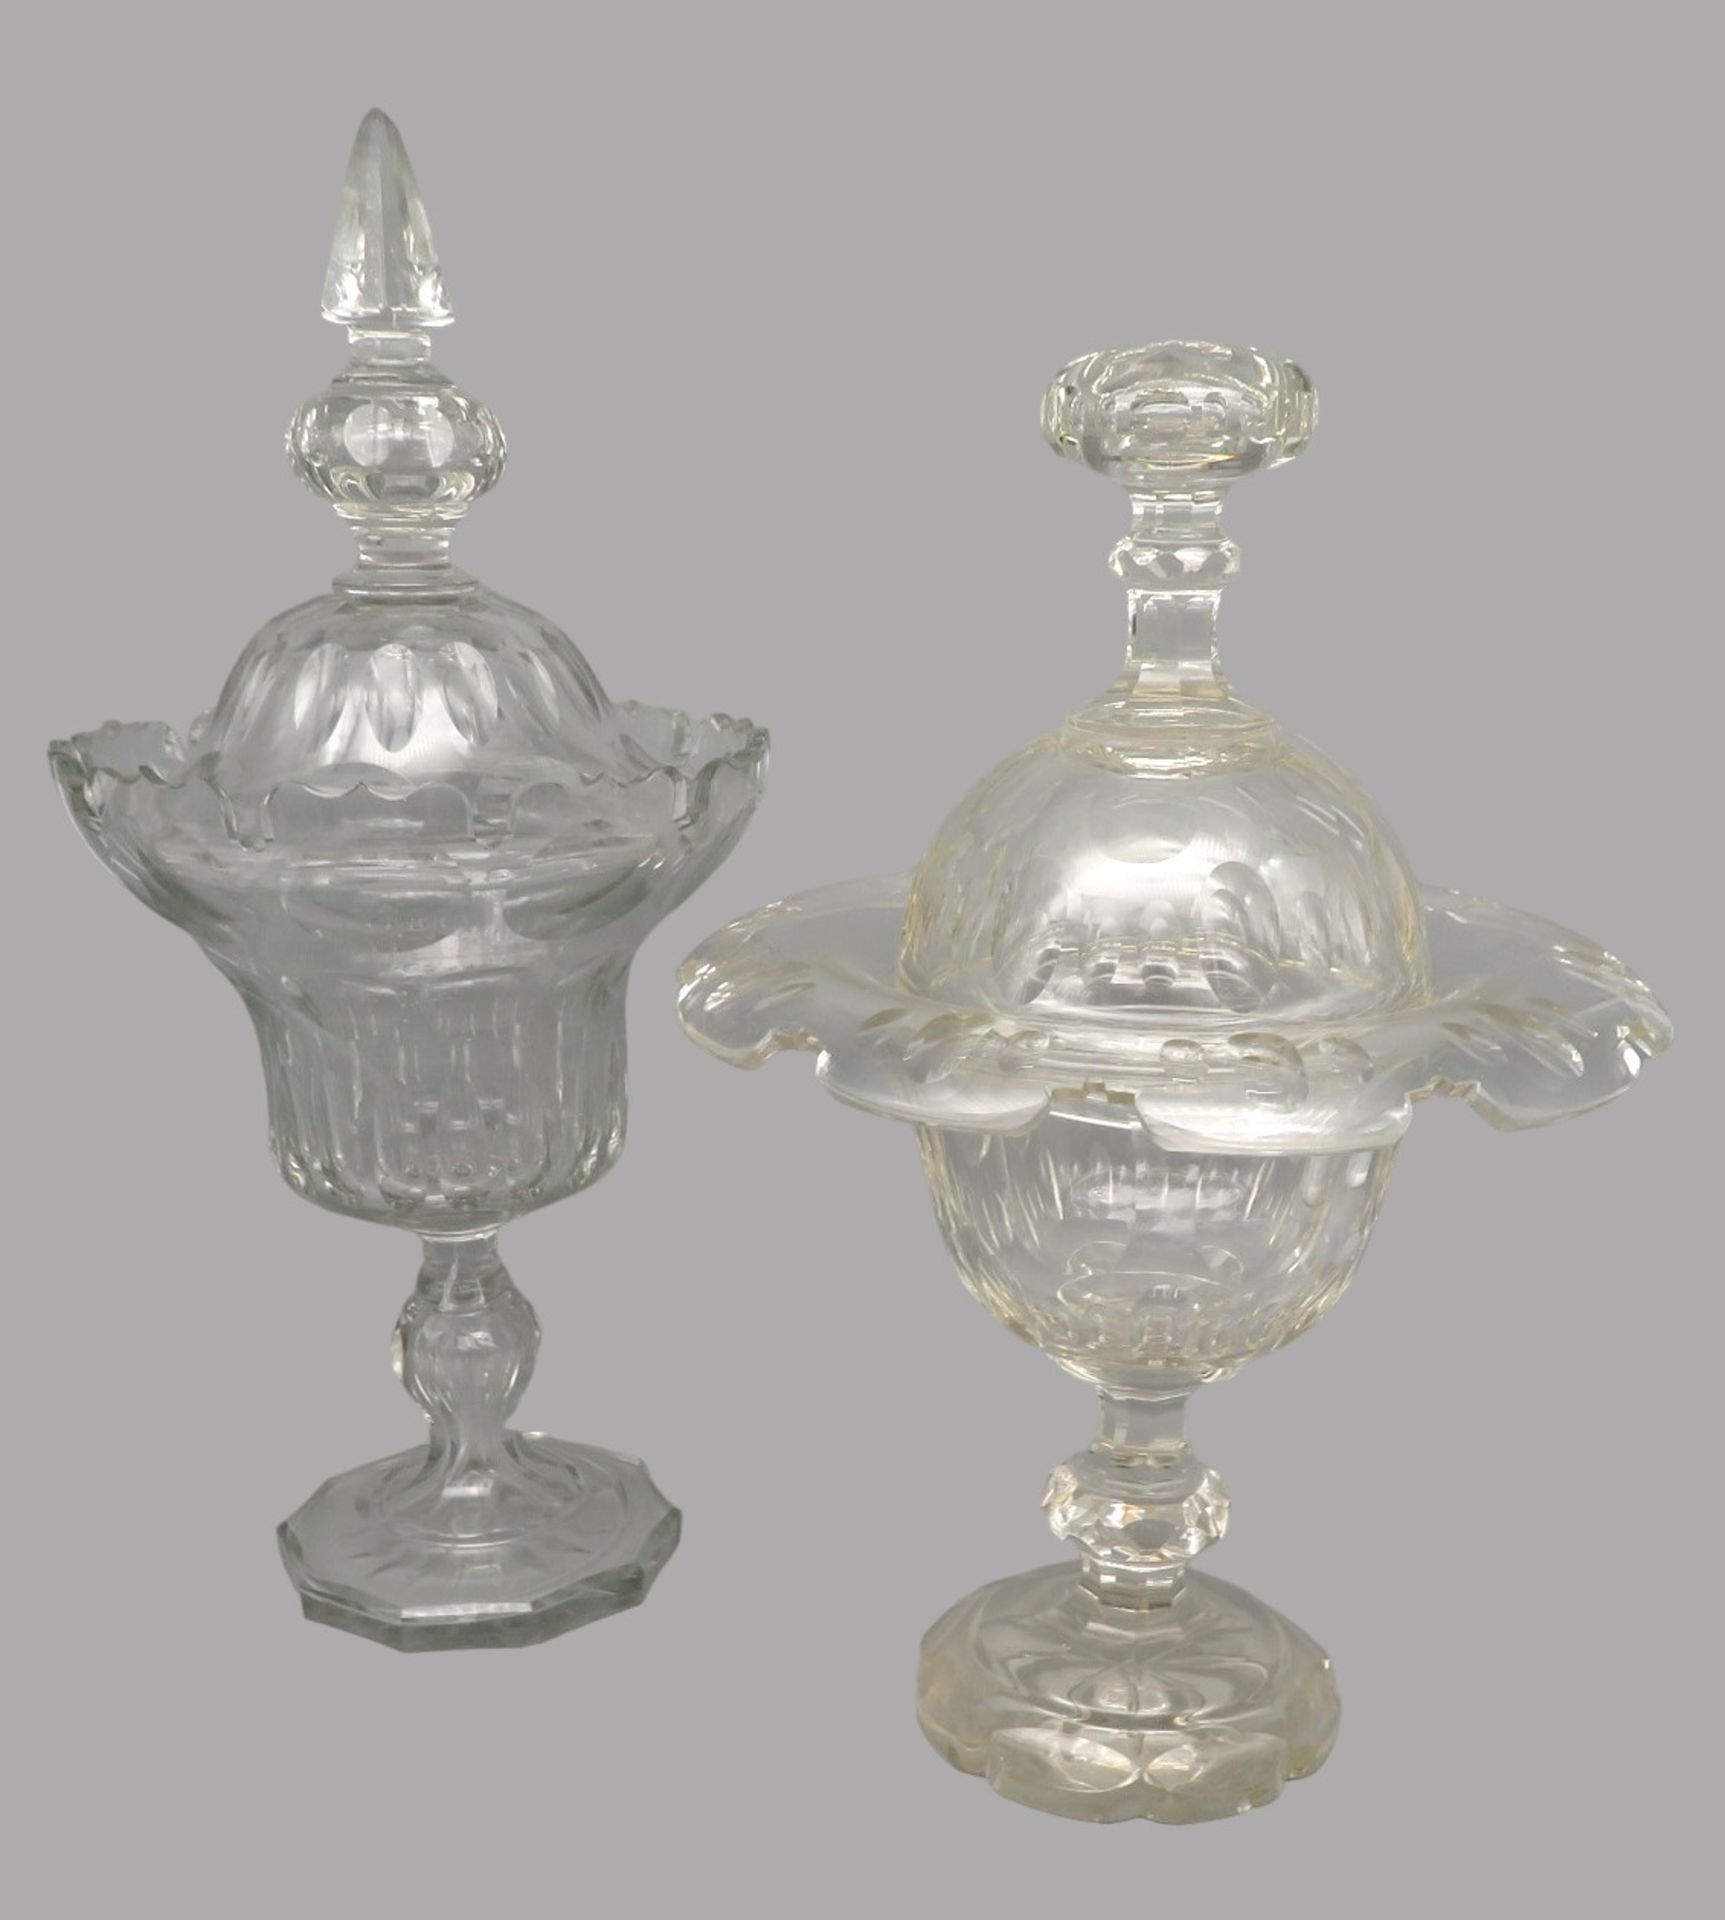 2 elegante Ingwergefäße/Deckelgefäße, 19. Jahrhundert, divers, farbloses Bleikristall geschliffen, 